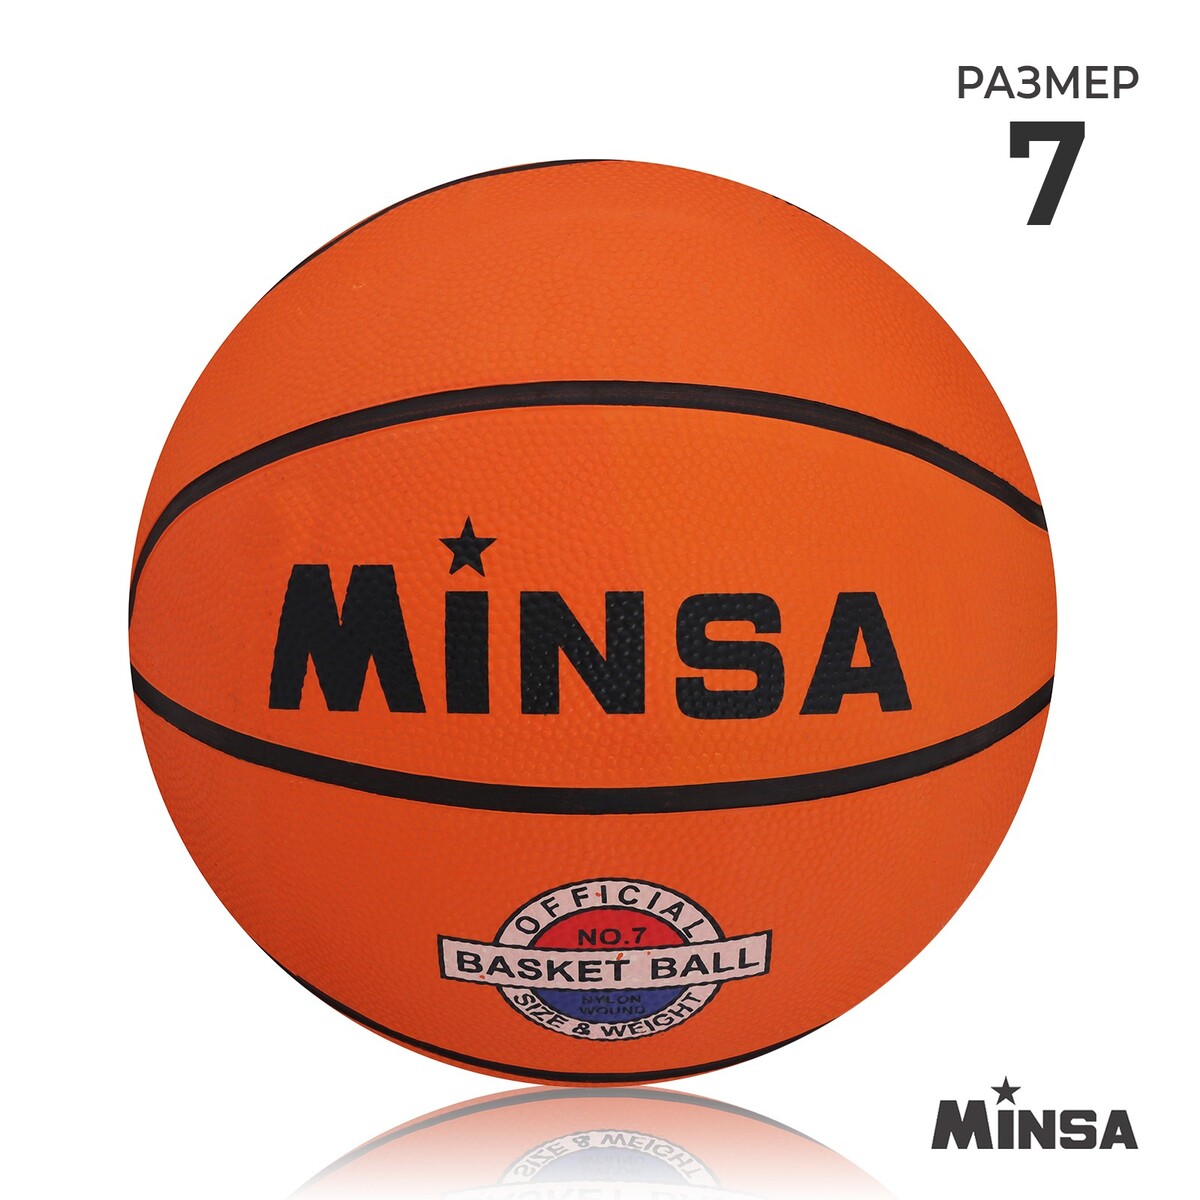 Мяч баскетбольный minsa, пвх, клееный, 8 панелей, р. 7 мяч баскетбольный molten b7g3800 р 7